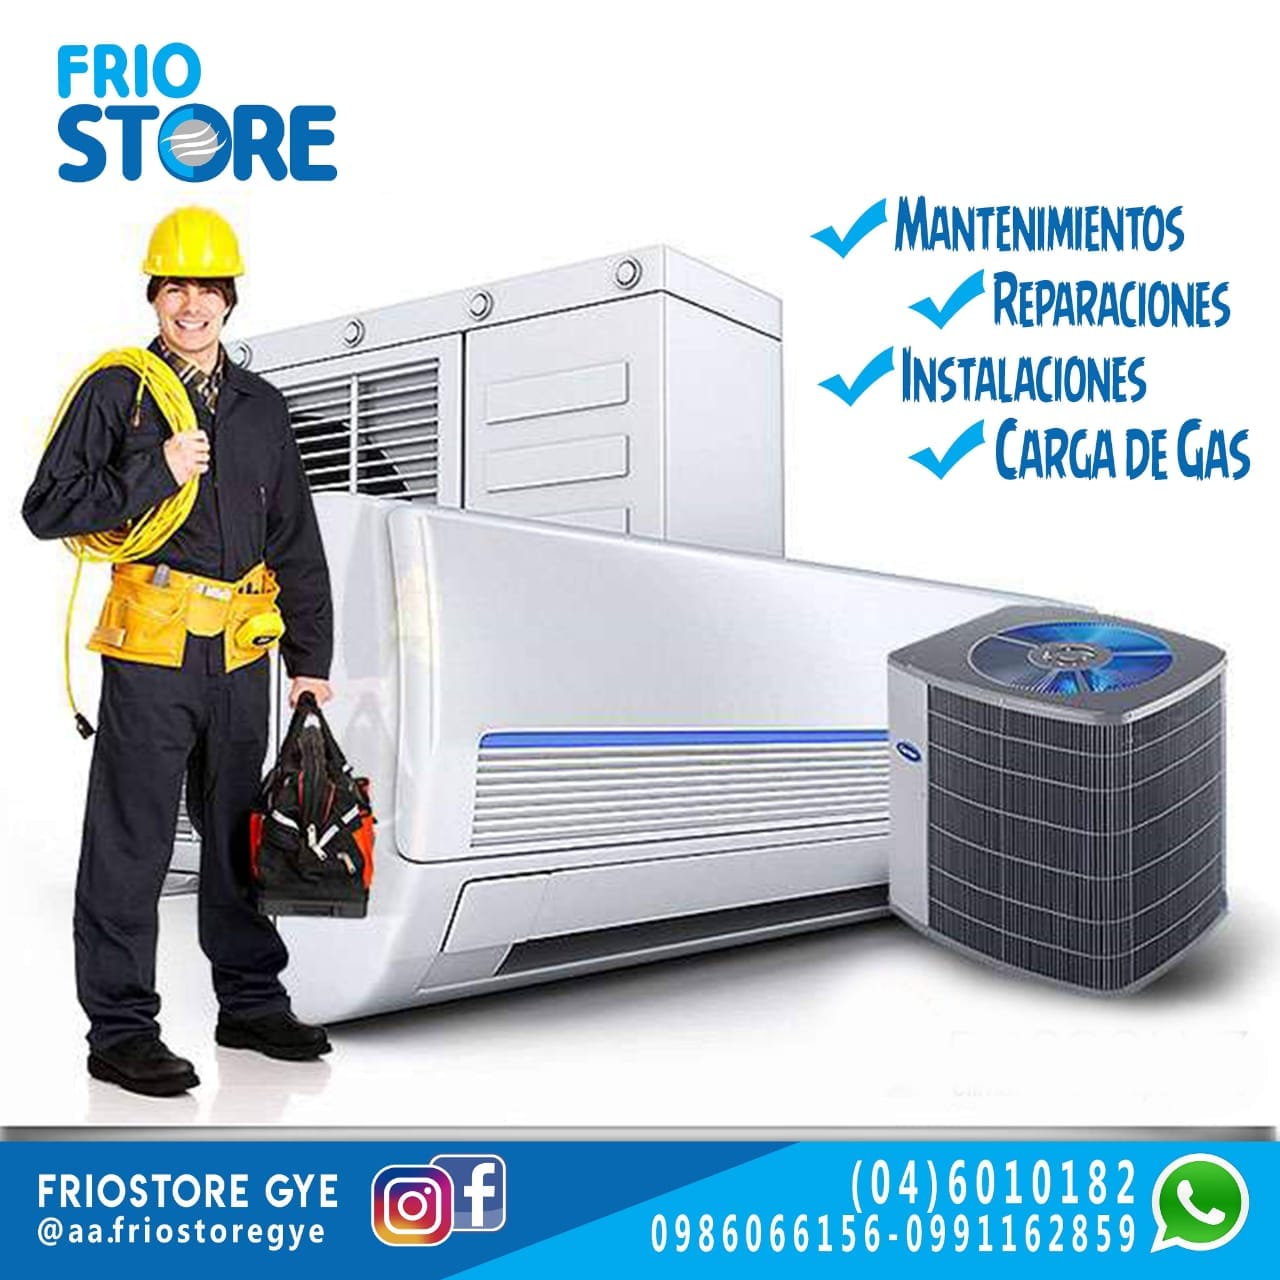 Servicio tecnico en climatizacion y... - Aires Acondicionados Frio Store | Friostore.com